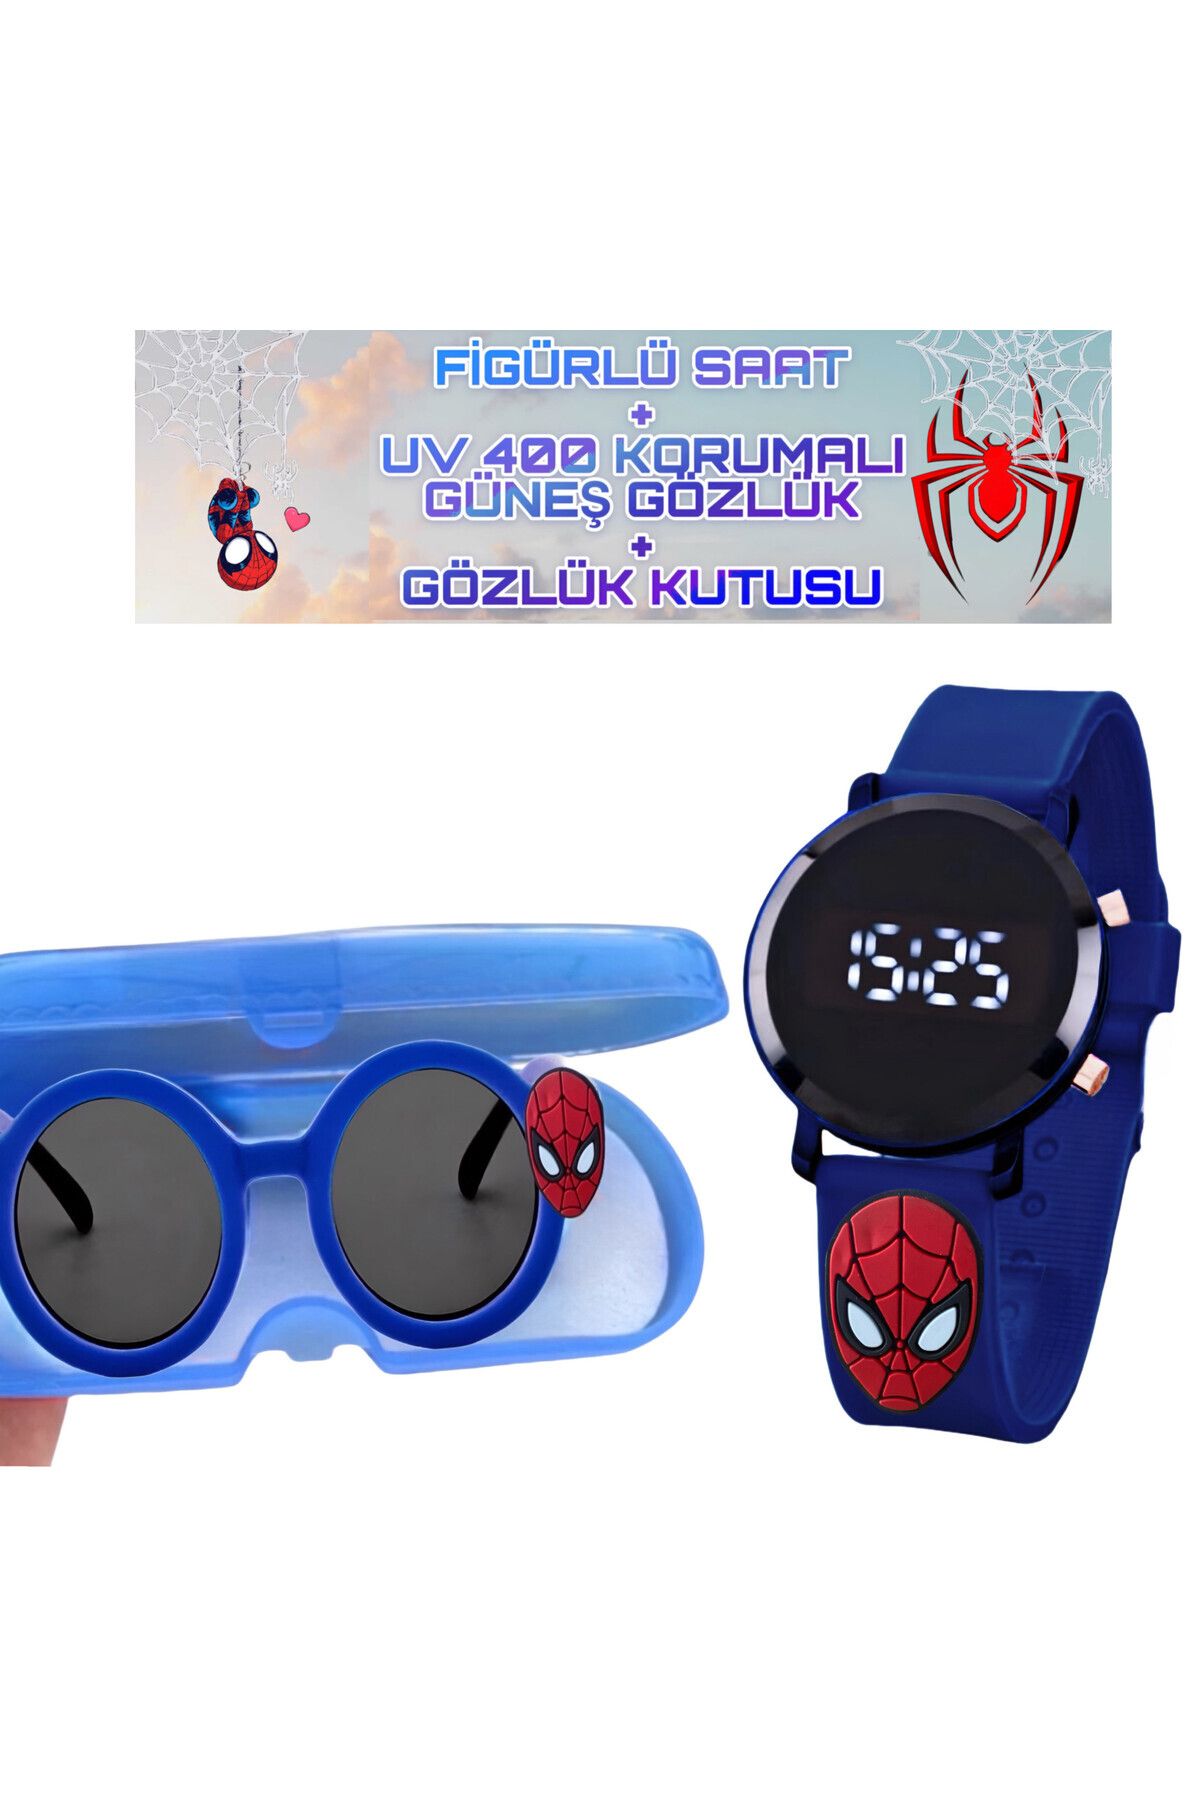 Onkatech X77 Çocuk Saati Figürlü Dijital Dokunmatik Led Ekran Ve Figürlü Gözlük (GÖZLÜK KUTUSU İ?LE)